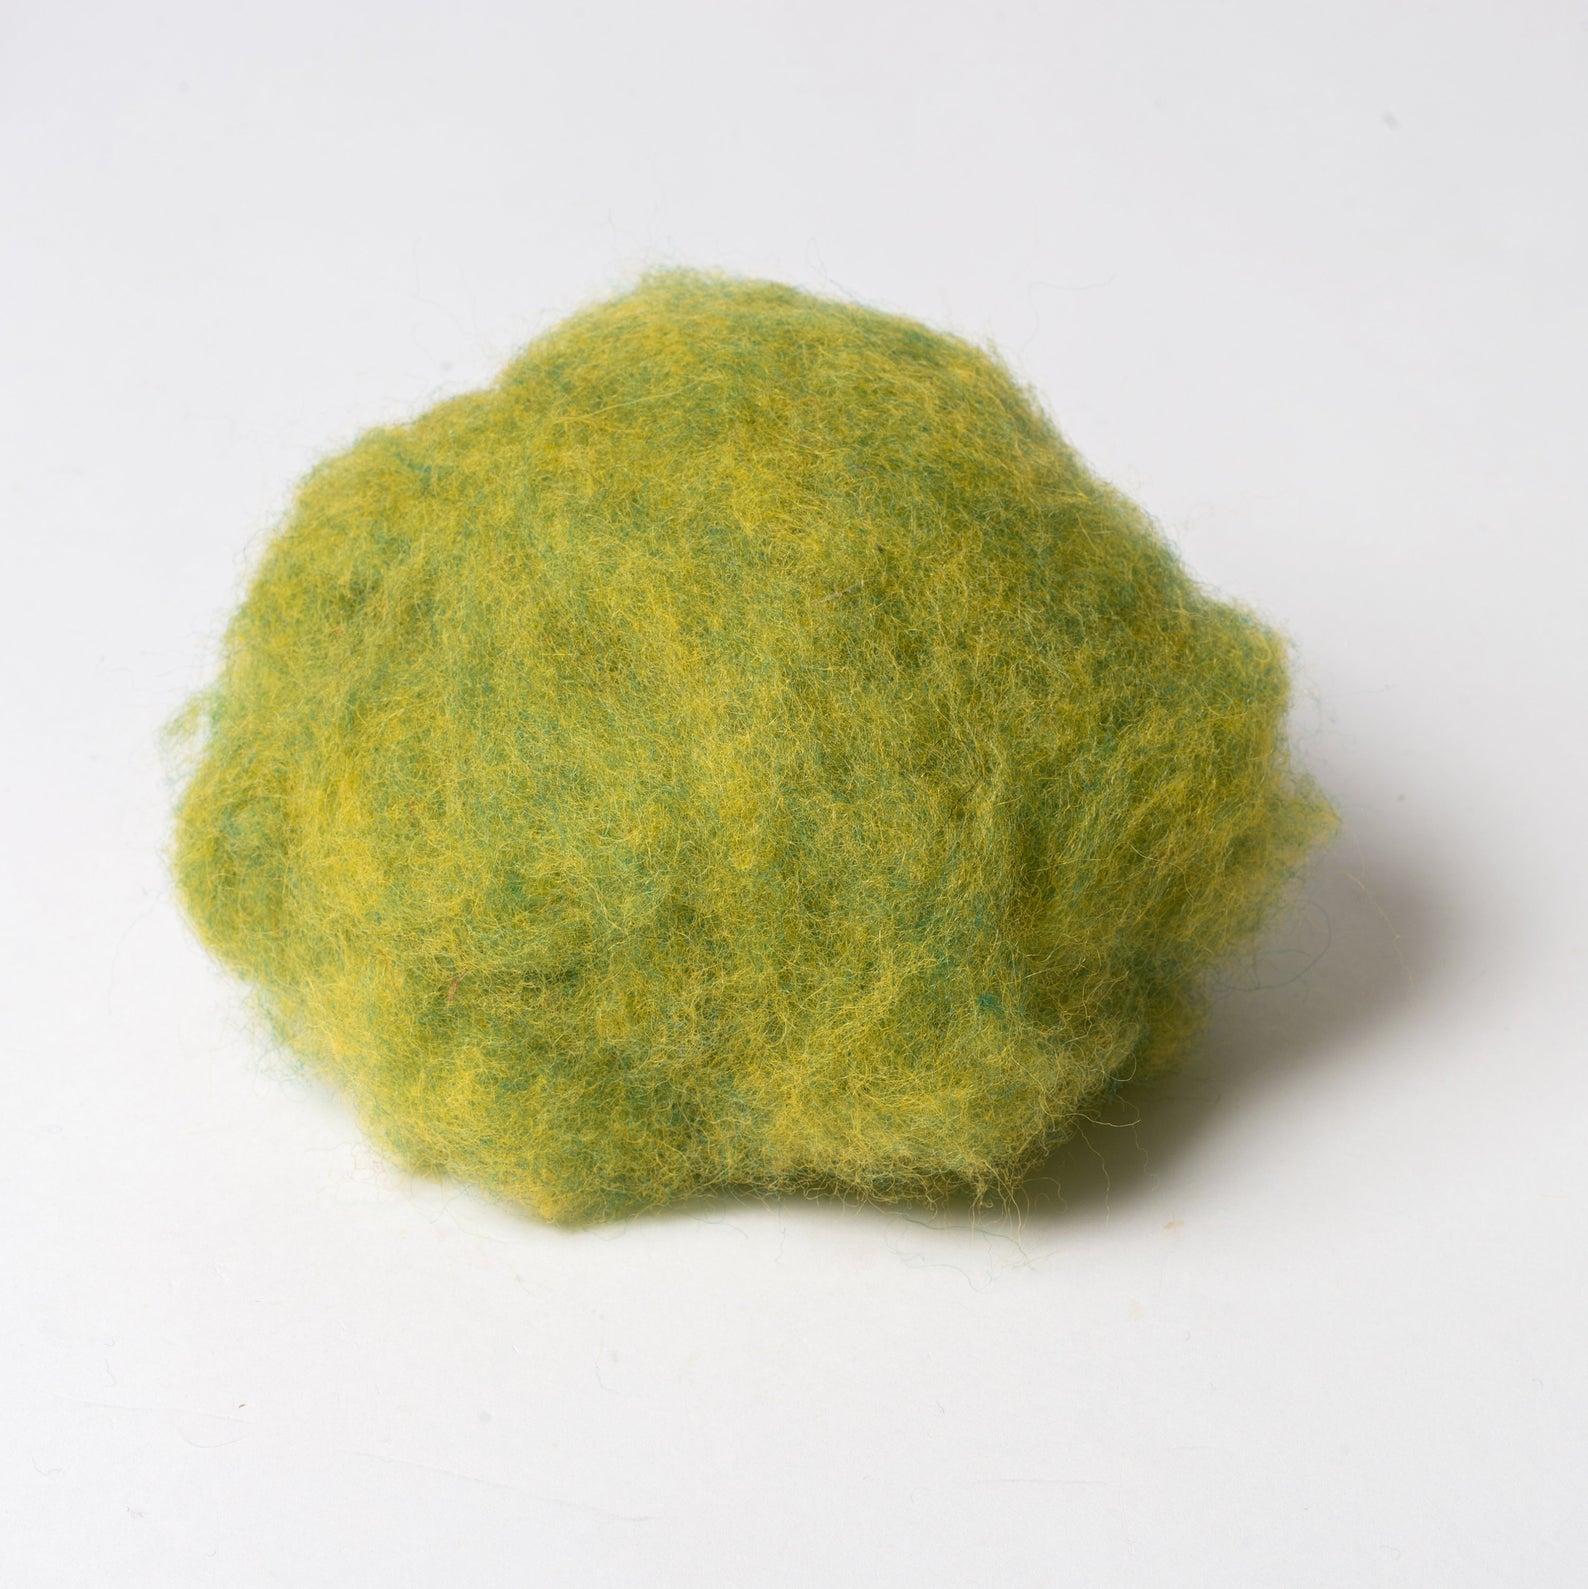 Apple Green Wool for Wet Felting, Tyrolean Bergschaf from BureBure